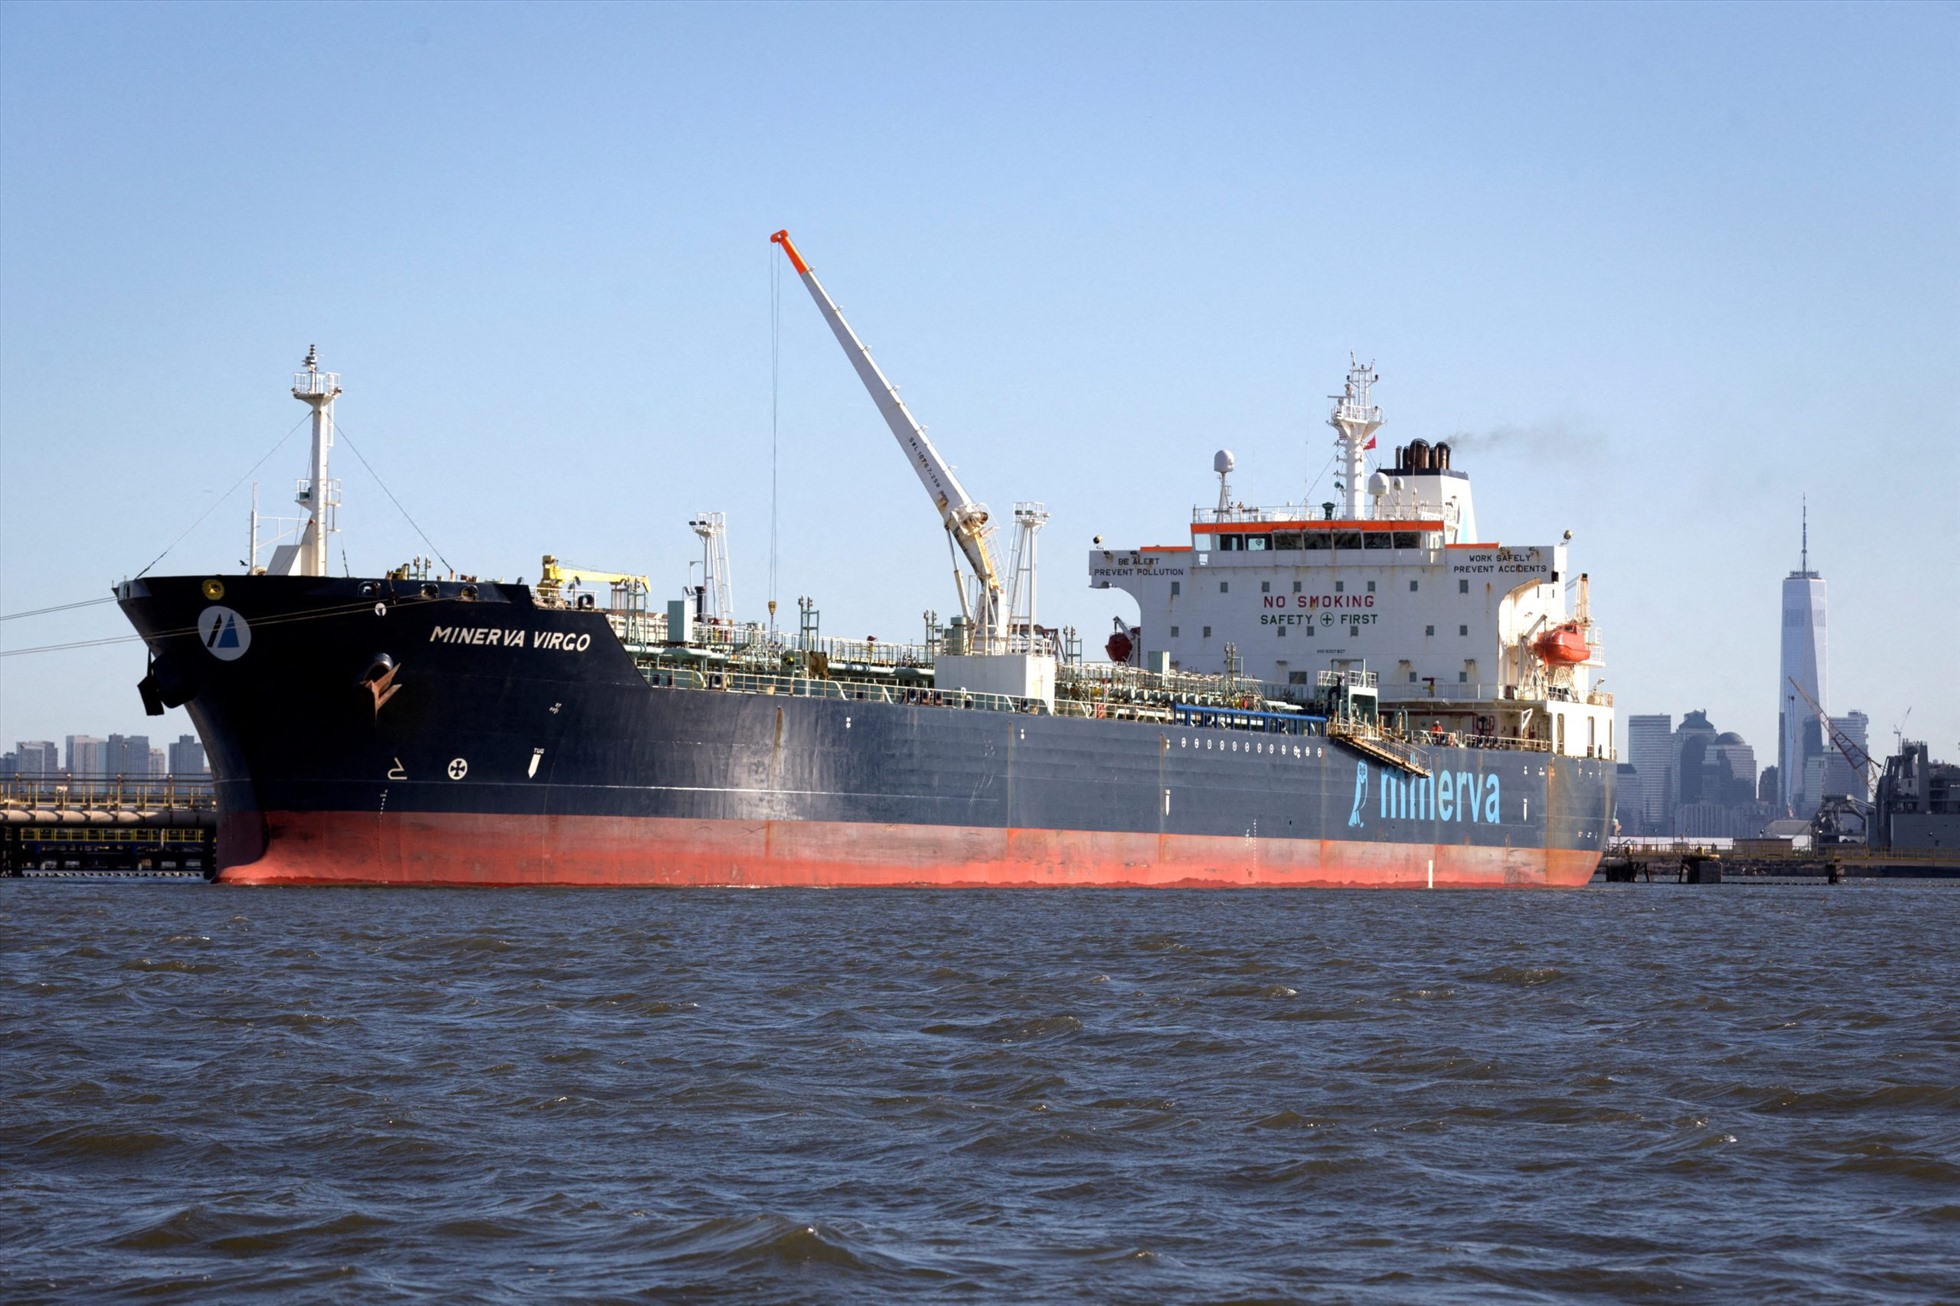 Tàu chở dầu Minerva Virgo sau khi rời một cảng của Nga vào khoảng cuối tháng 2.2022. Ảnh: Reuters